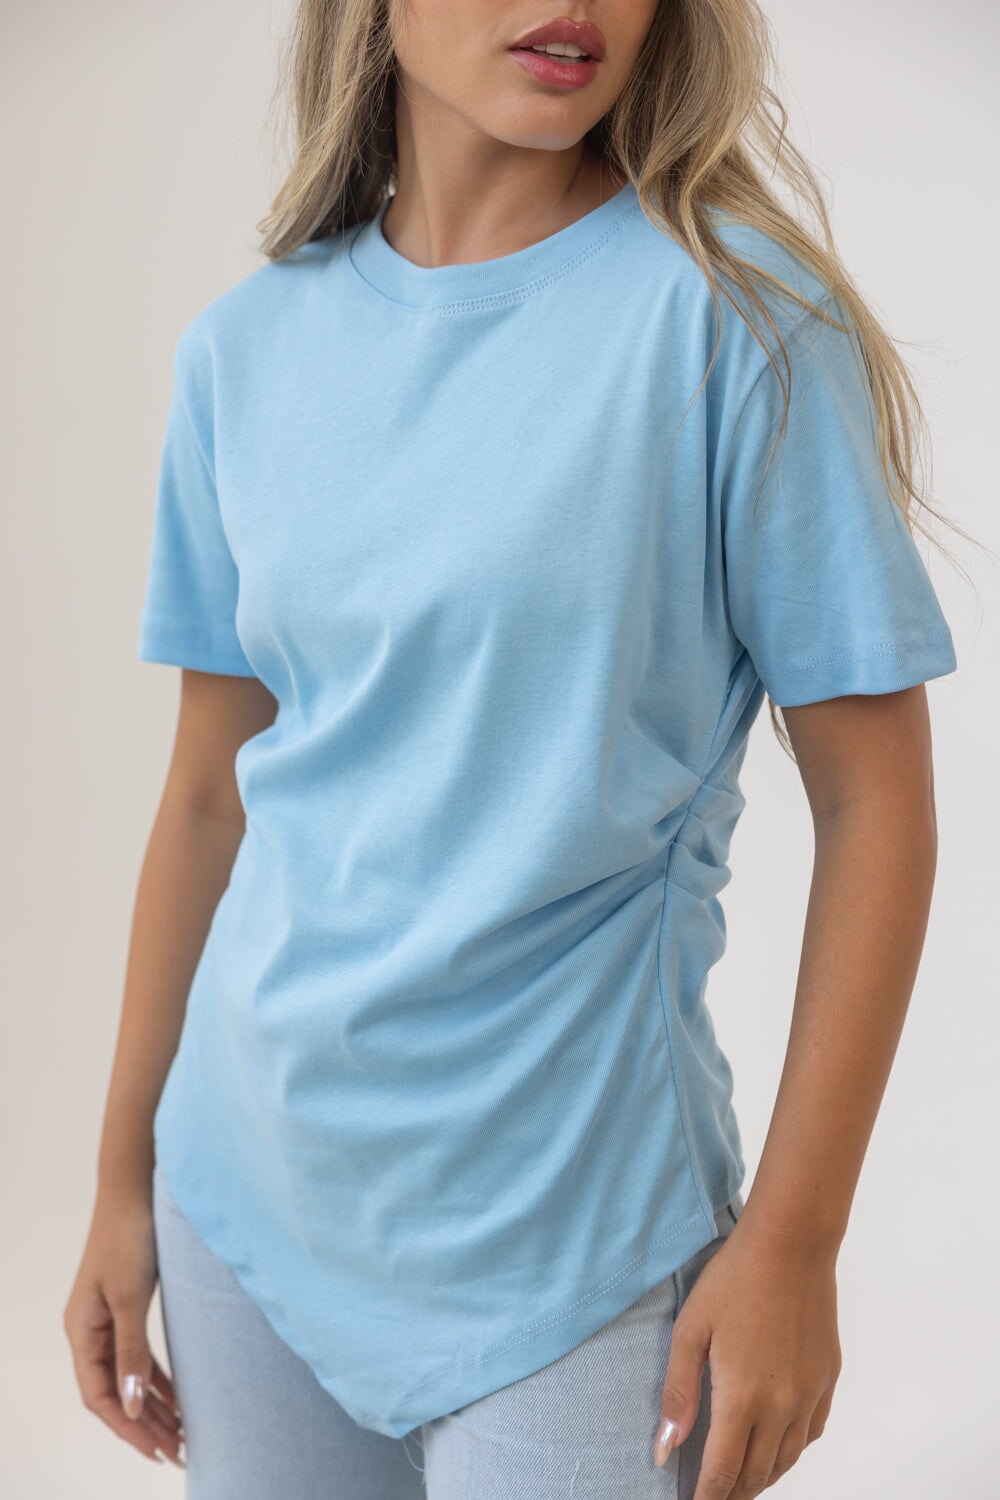 חולצת מליסה TwentySix Light Blue One Size 